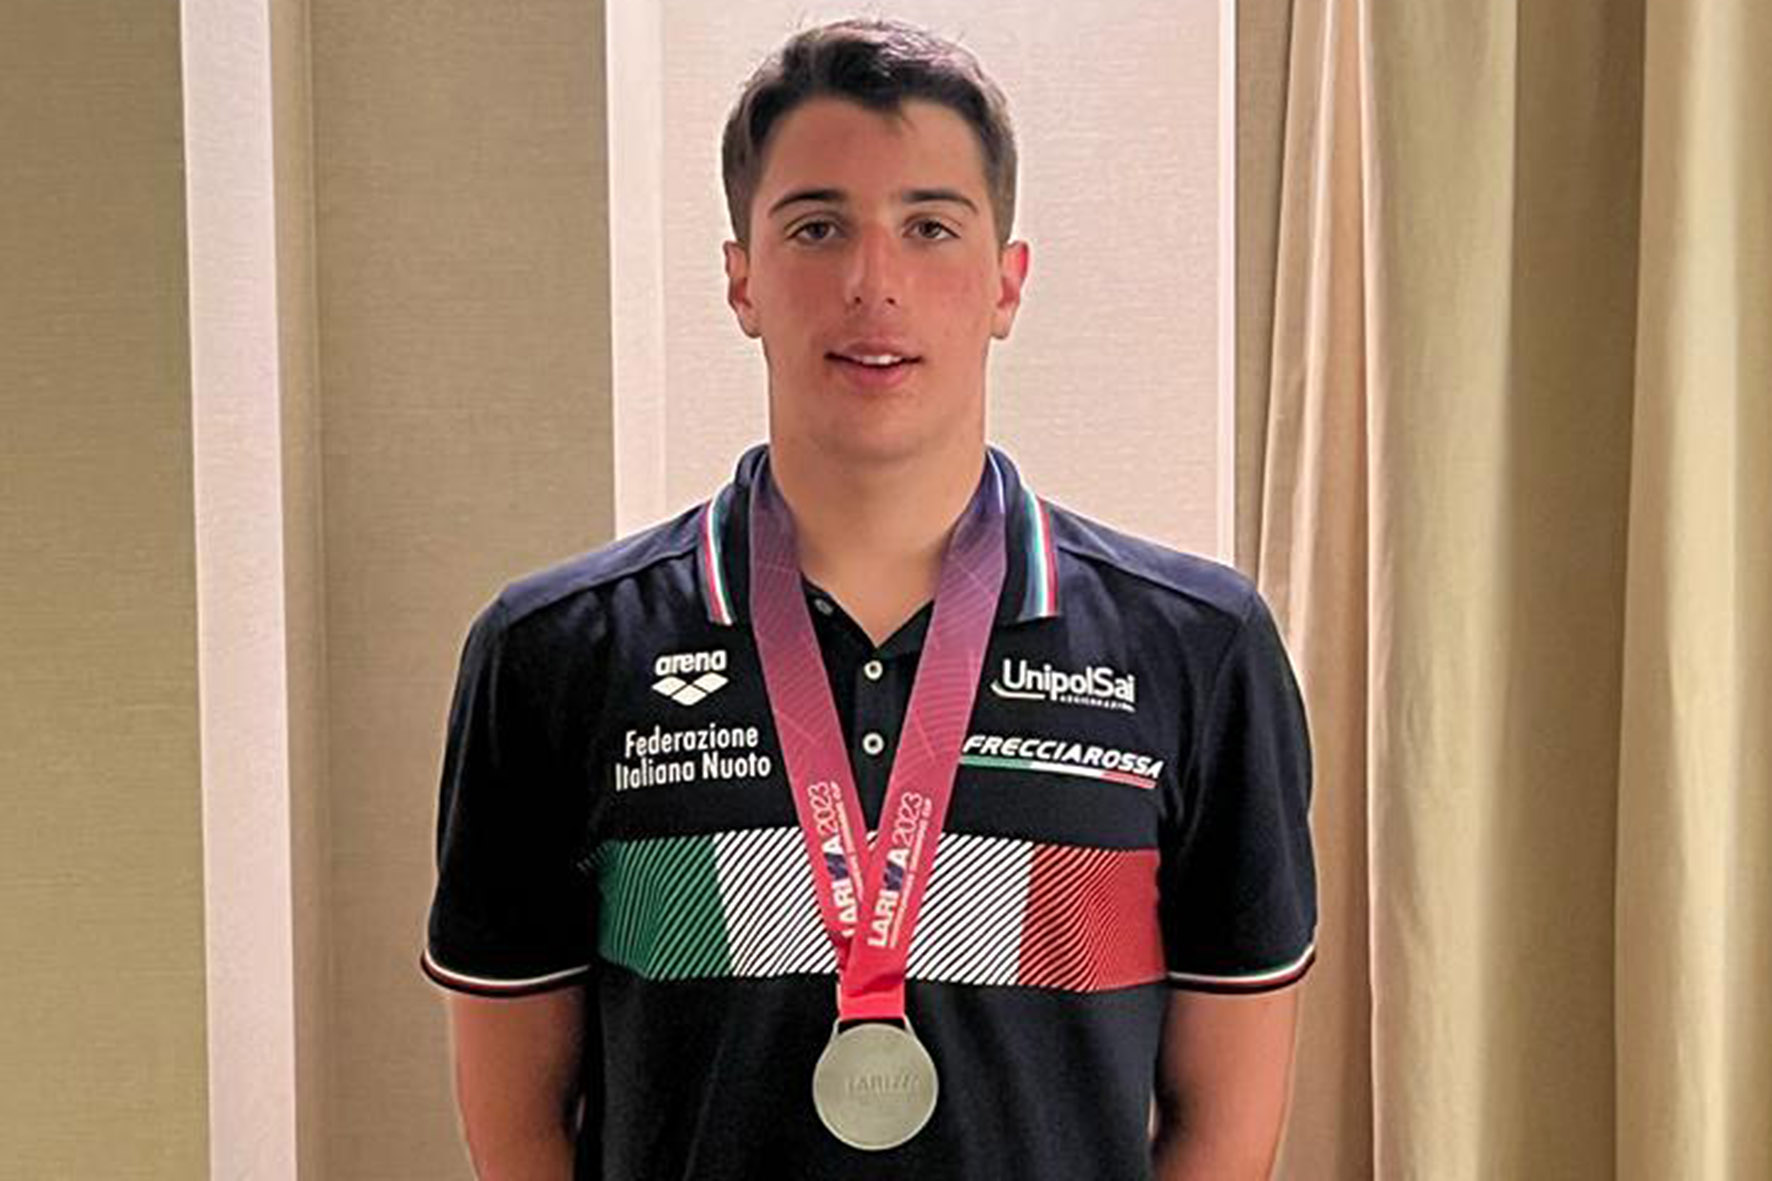 Ο Gabriele Mealli κερδίζει δύο μετάλλια με την εθνική ομάδα της Ιταλίας – L’Ortica – Arezzo News